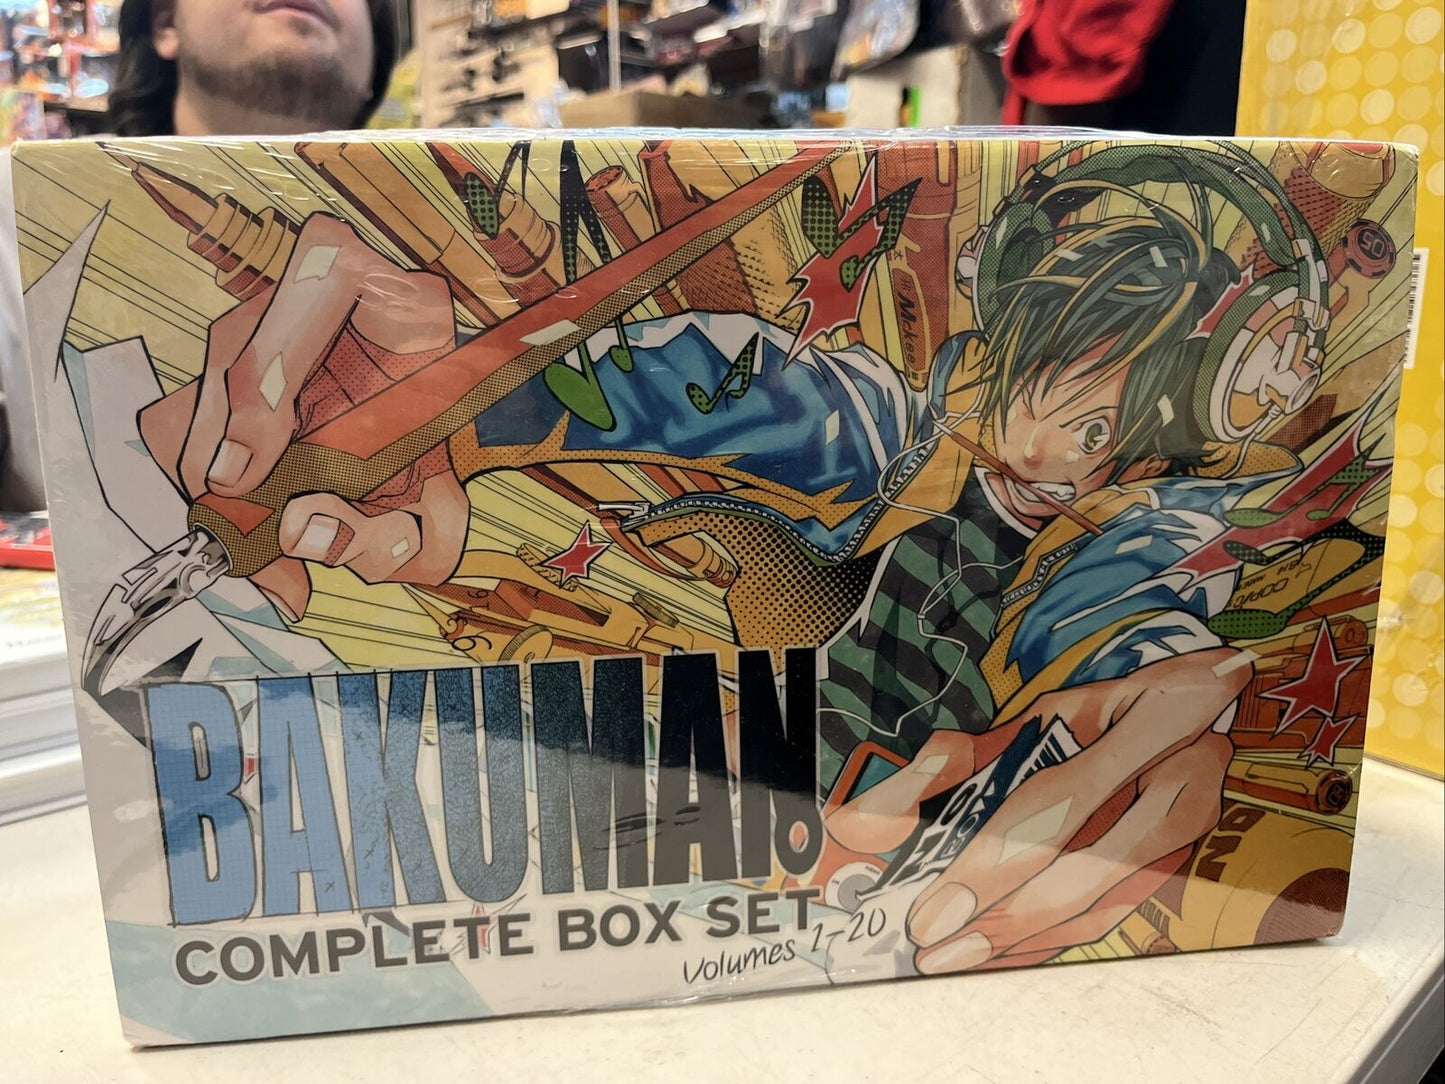 Bakuman Official Box Set